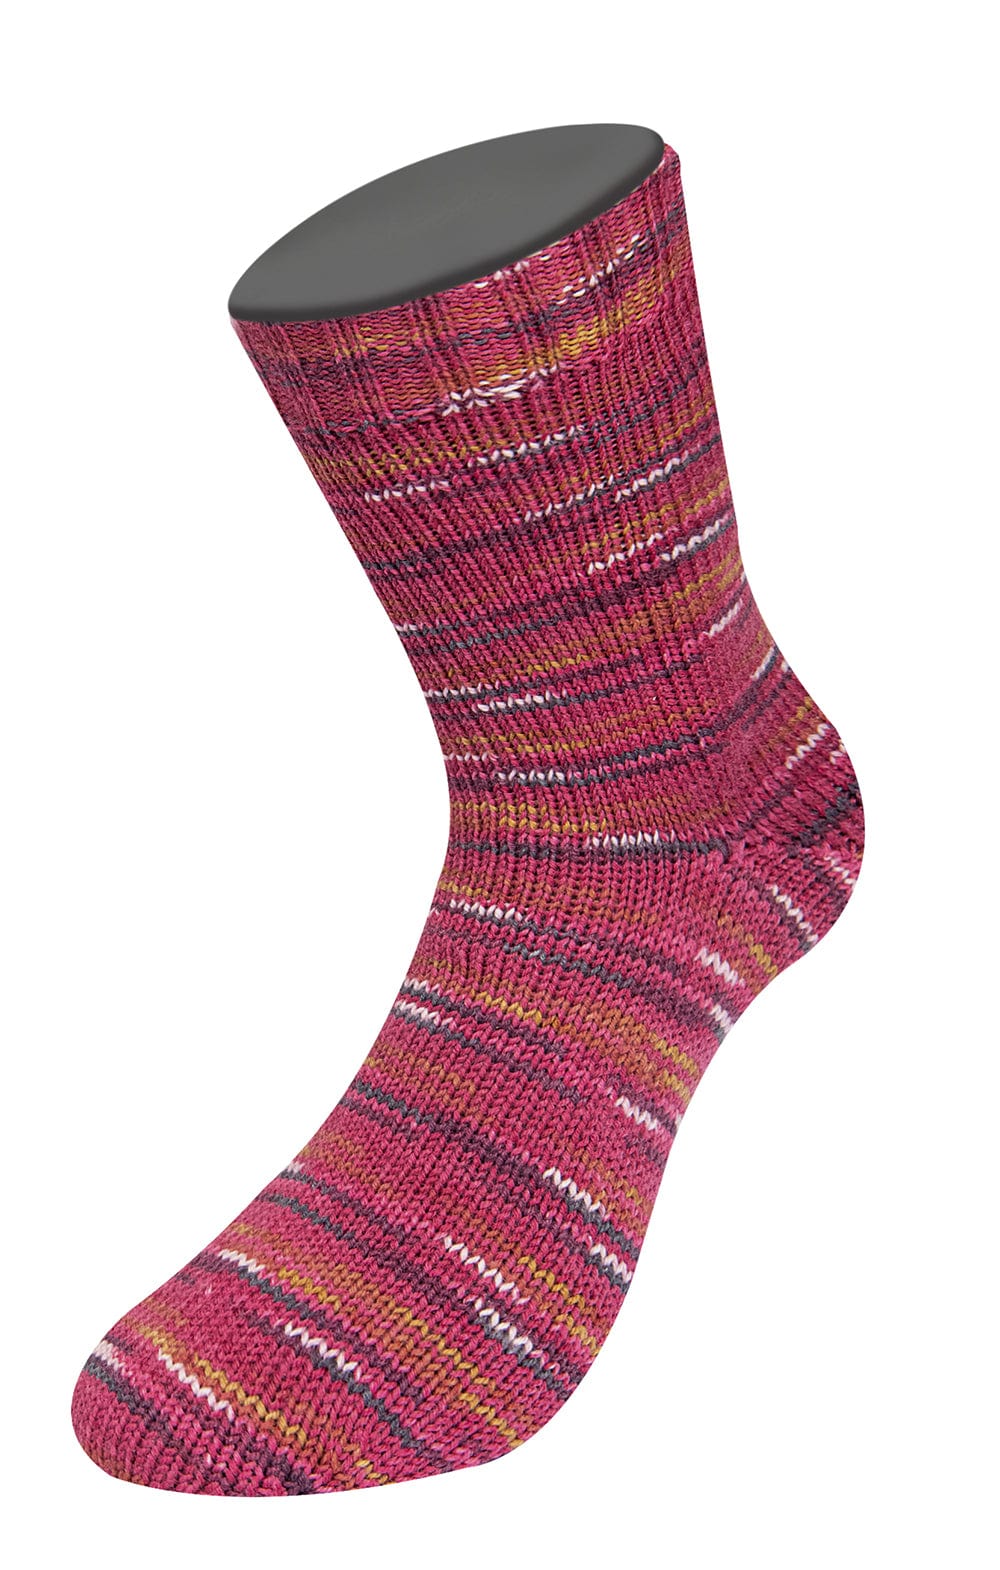 Socken 4-fach- AB MEILENWEIT 100 CASHMERE STREET - Strickset von LANA GROSSA jetzt online kaufen bei OONIQUE